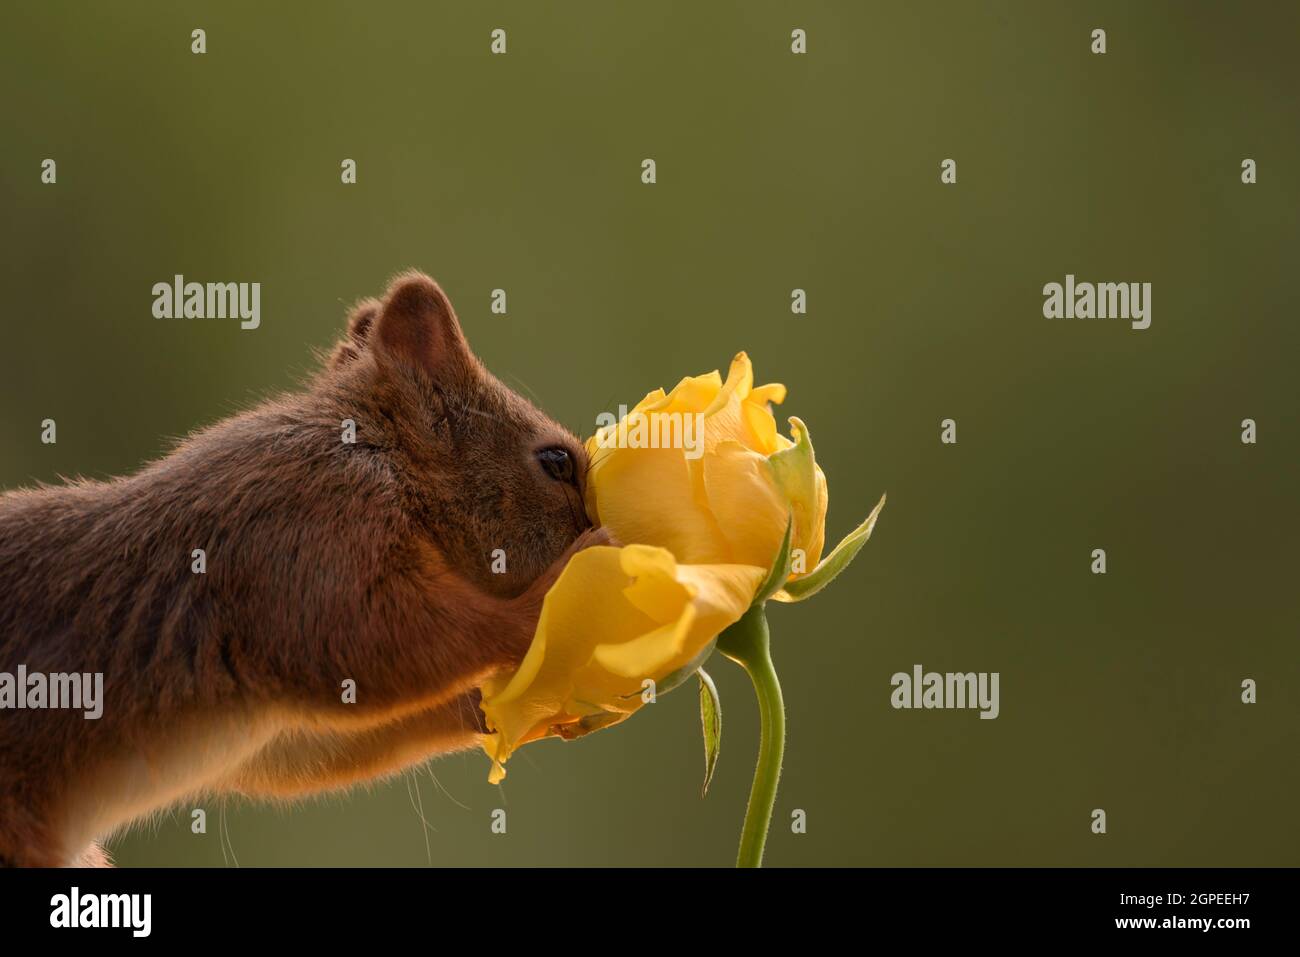 Eichhörnchen mit der Nase in eine gelbe Rose Stockfoto